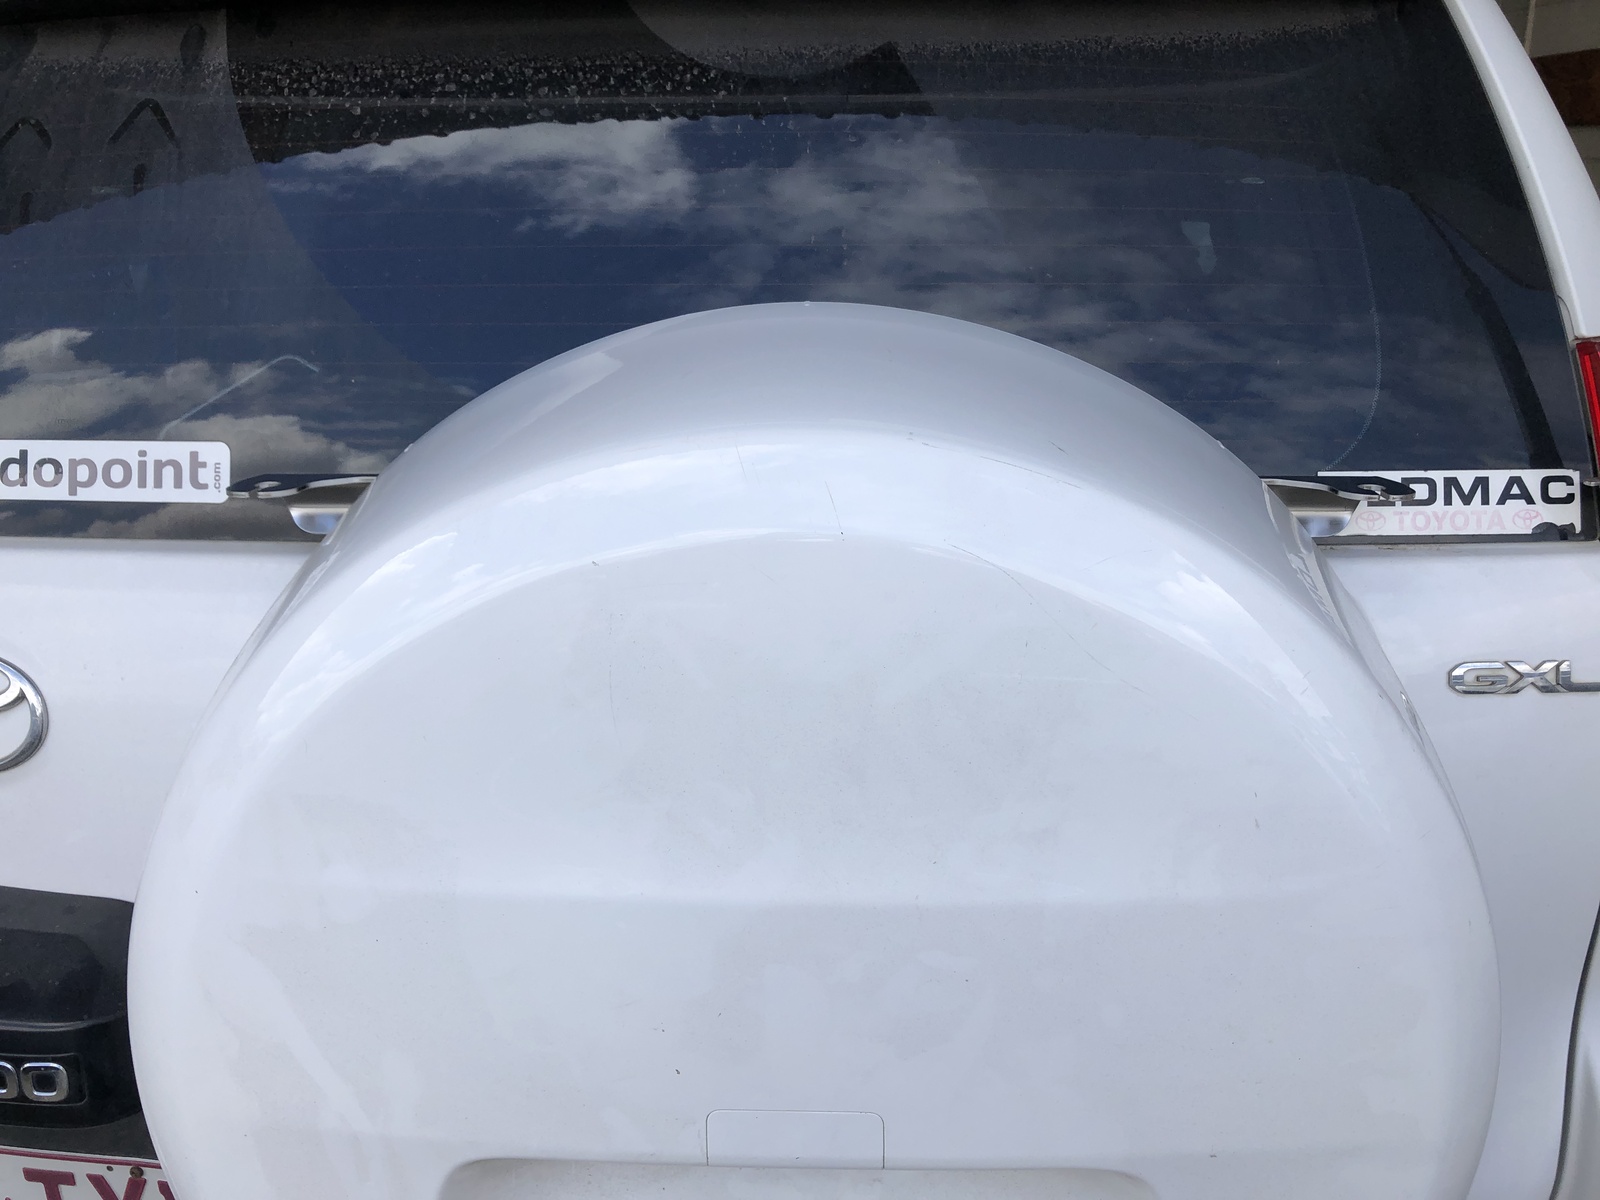 Double Rear Aerial Mount to Suit Toyota Prado 150 / Lexus GX 460